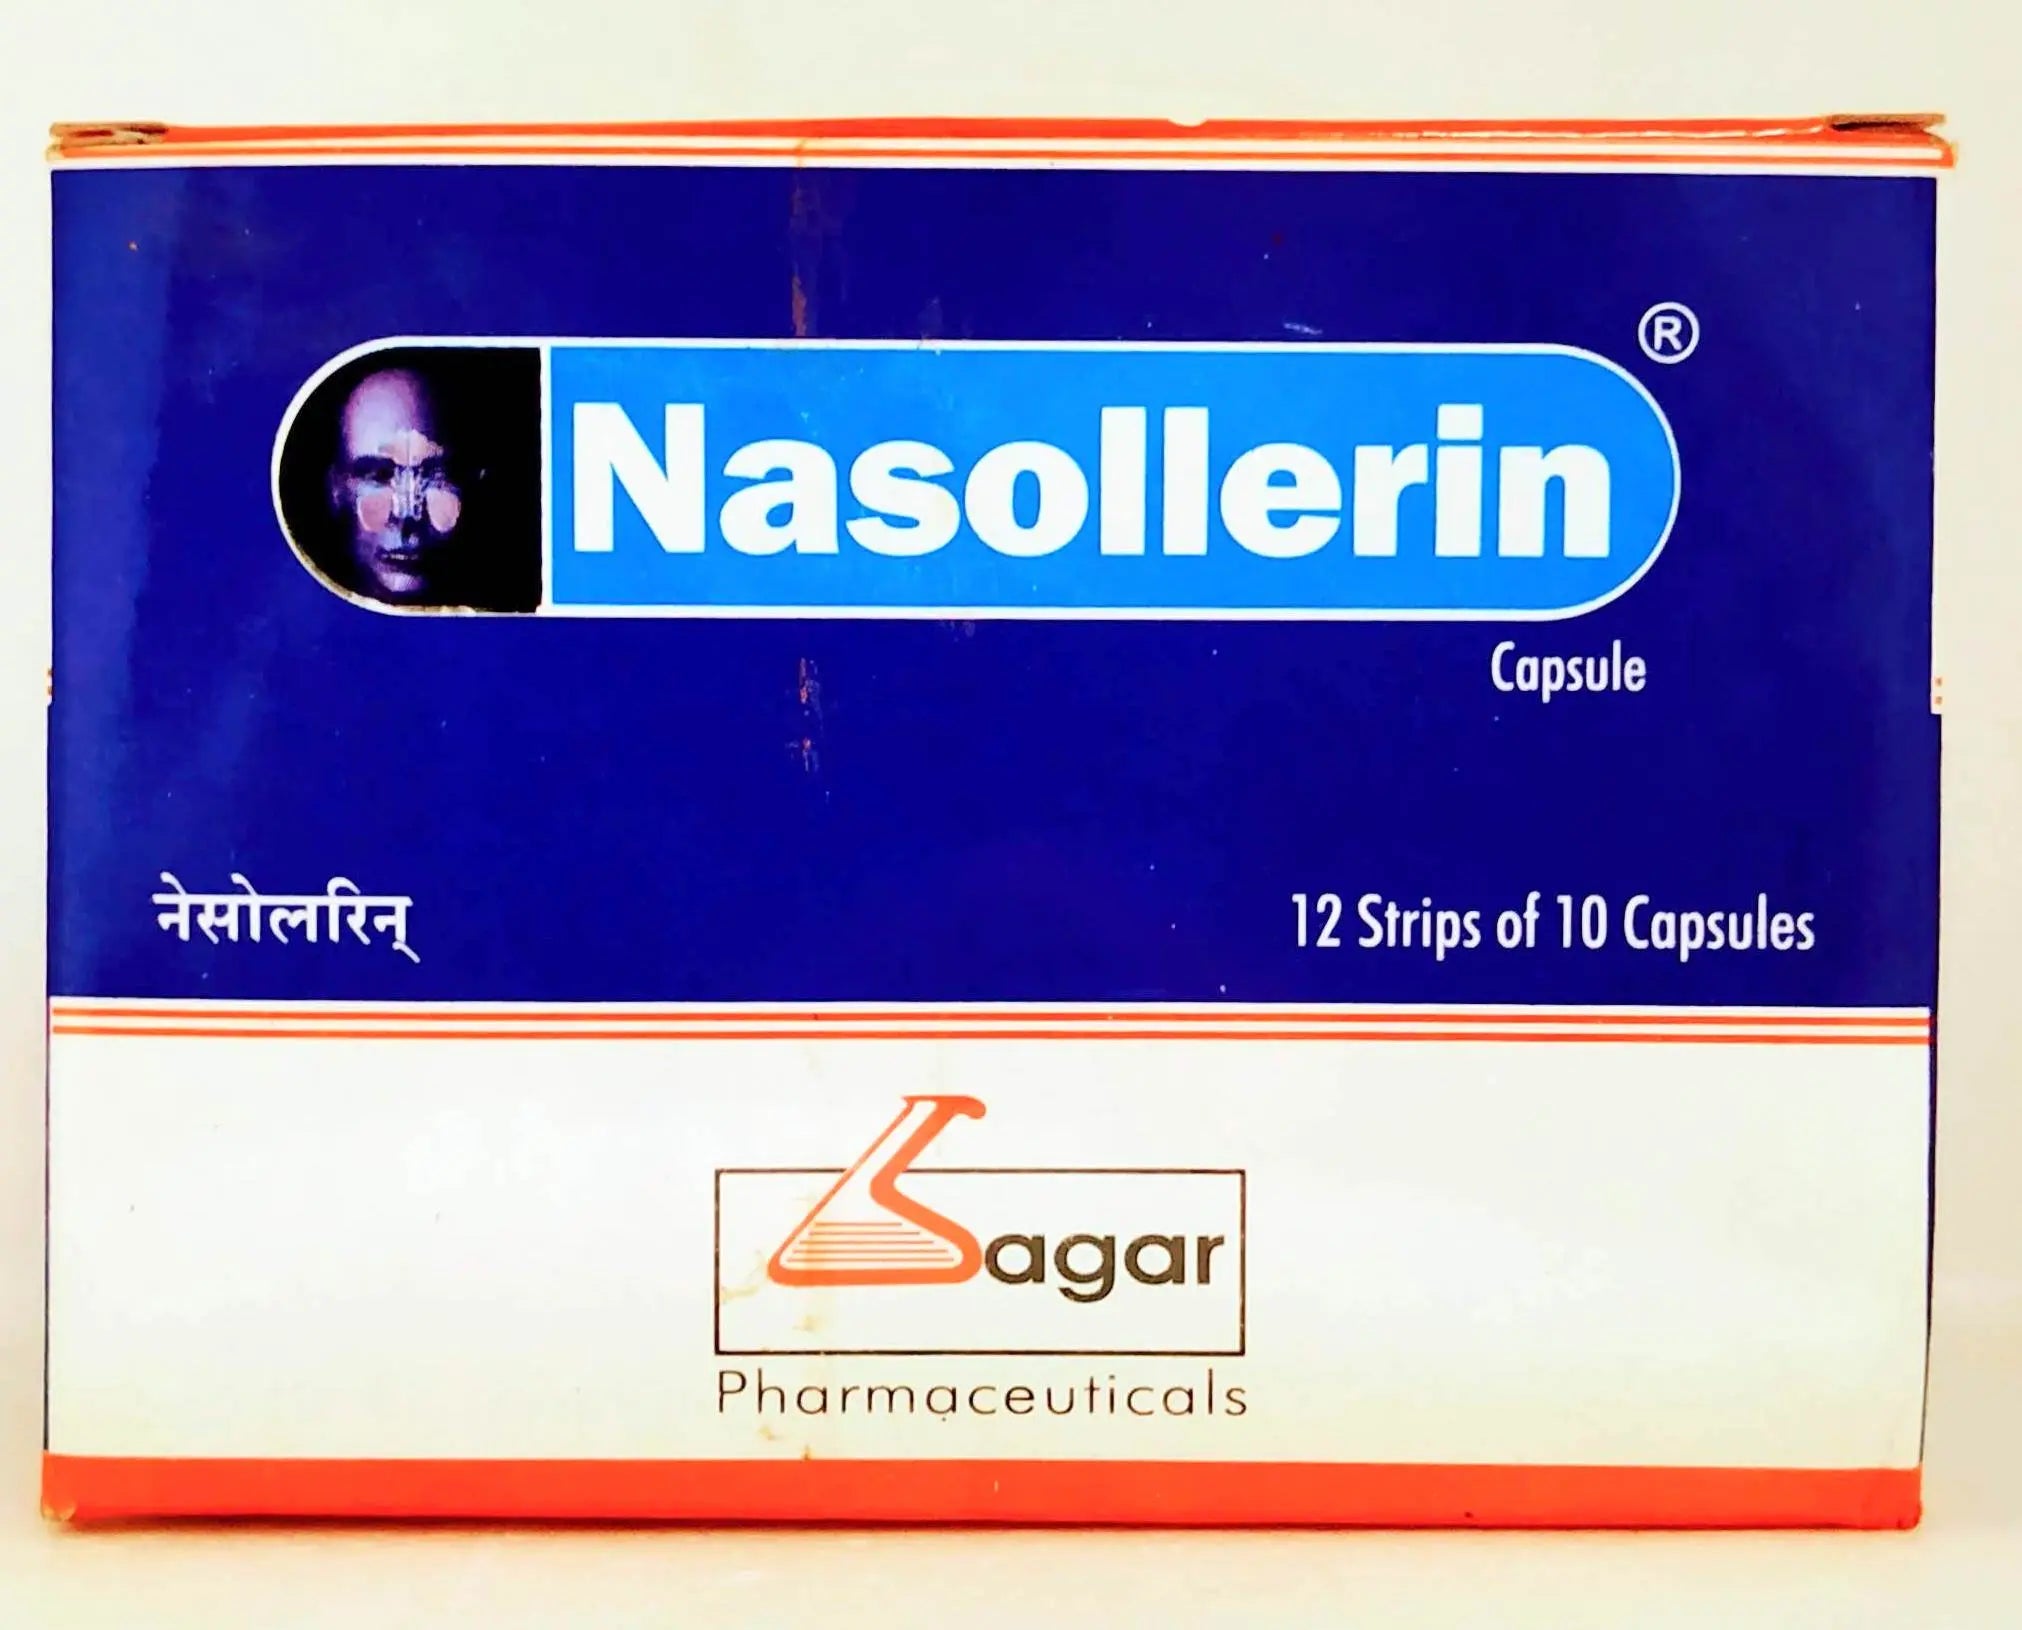 Nasollerin capsules - 10Capsules Sagar